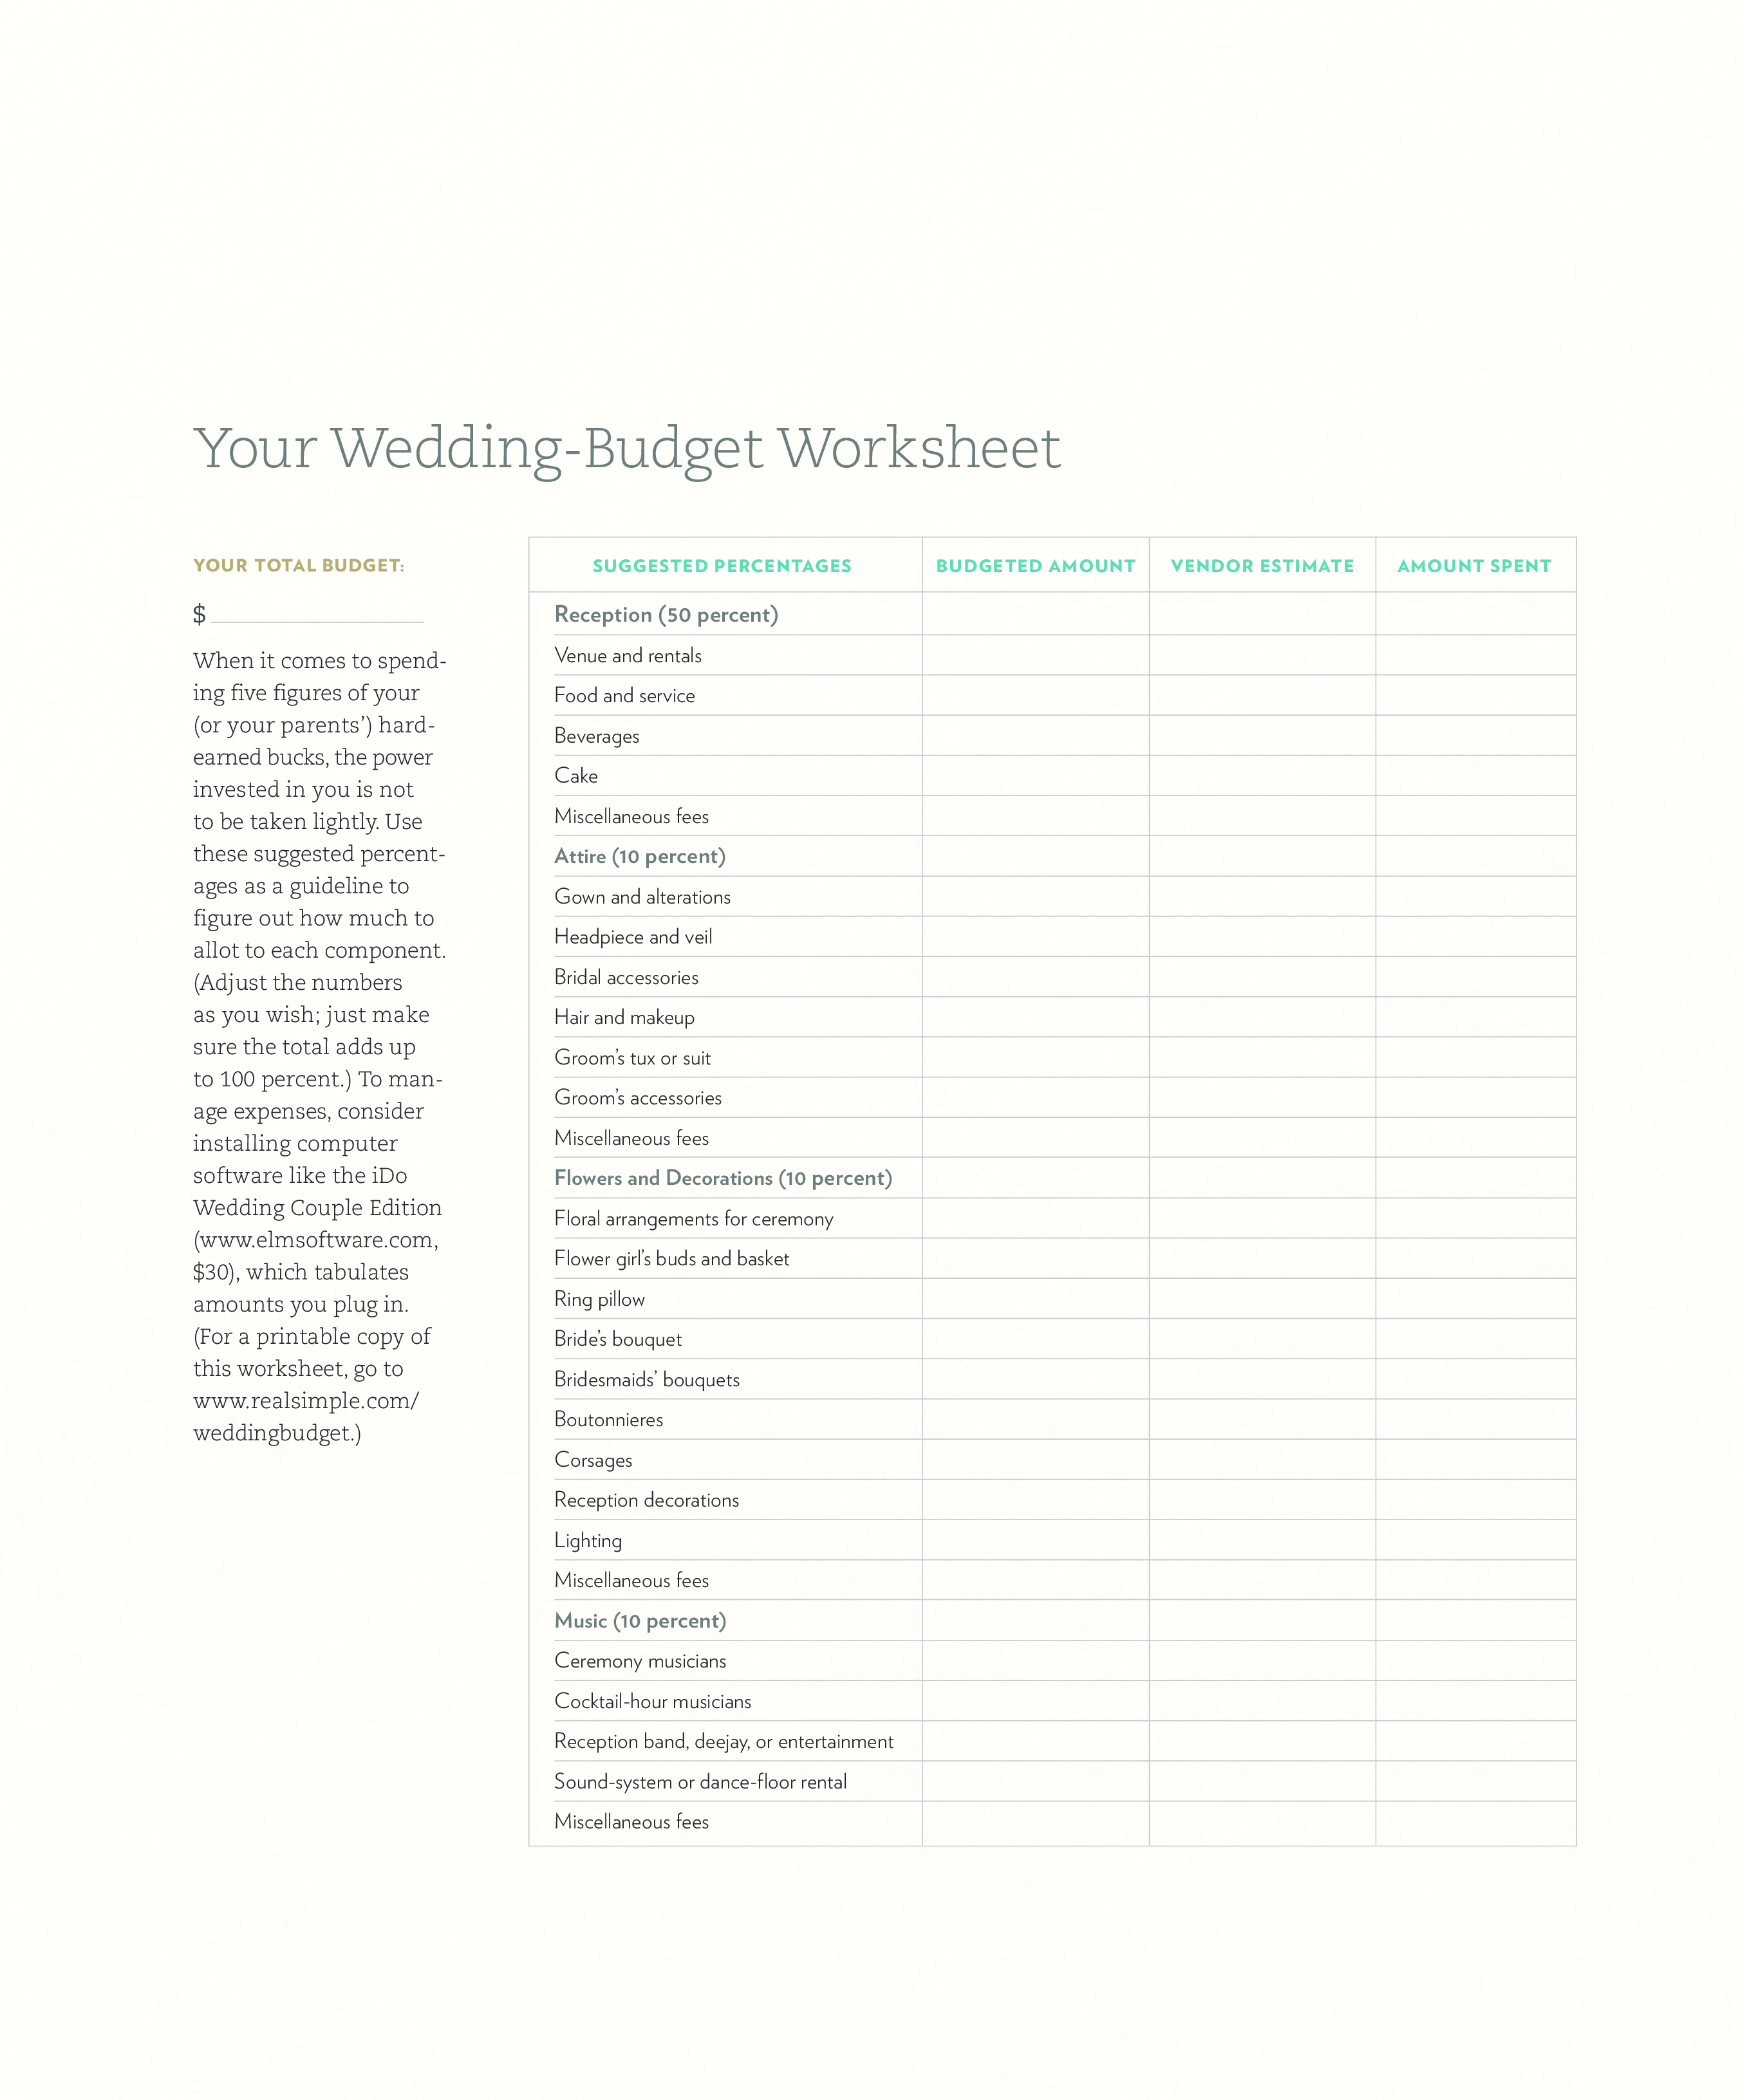 financial wedding budget pdf plantilla imagen principal